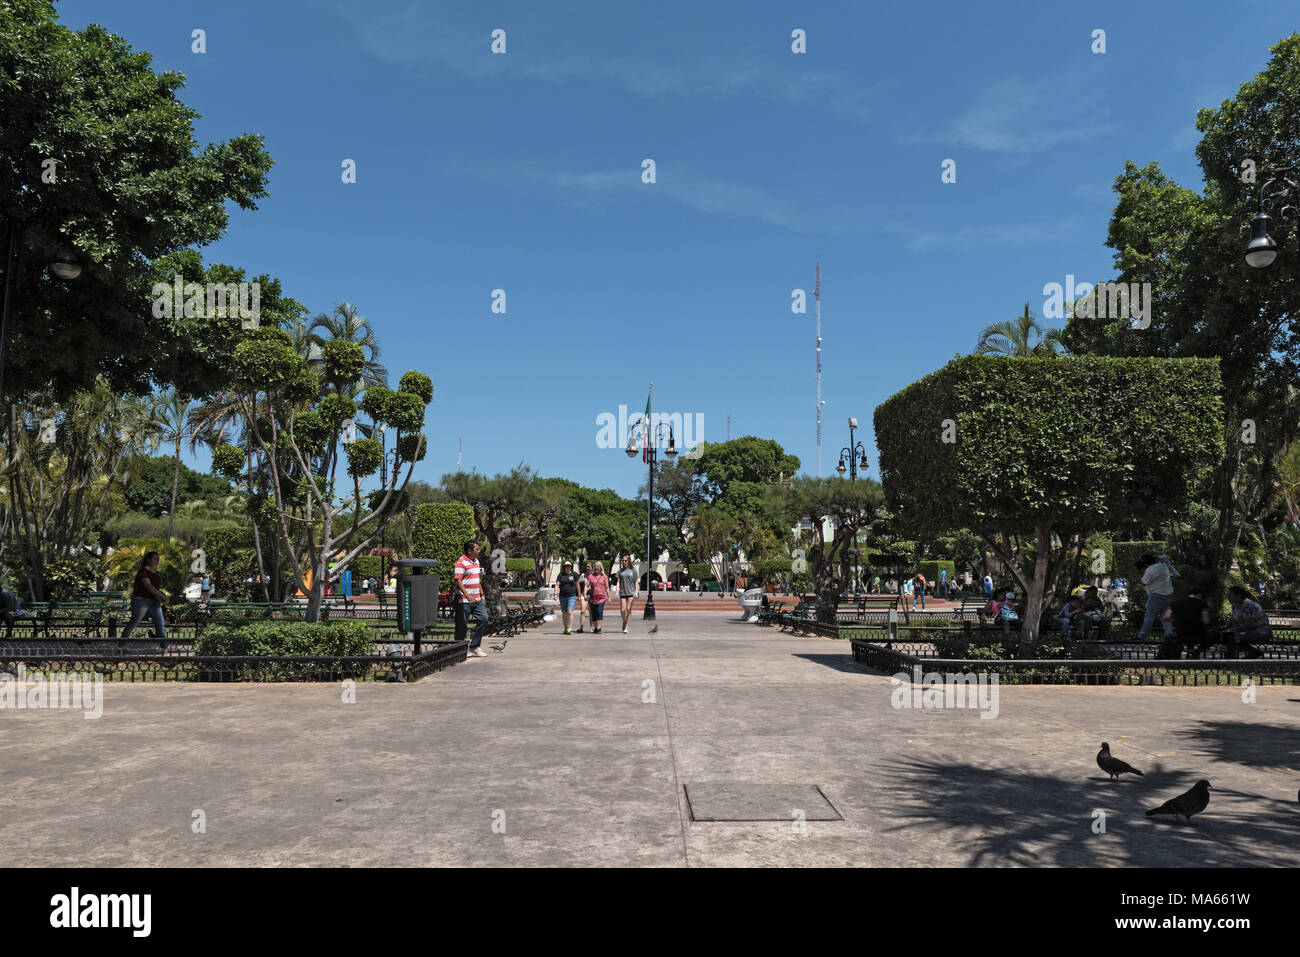 Vista di Plaza piazza Grande o Plaza de la Independencia in Merida, Messico Foto Stock